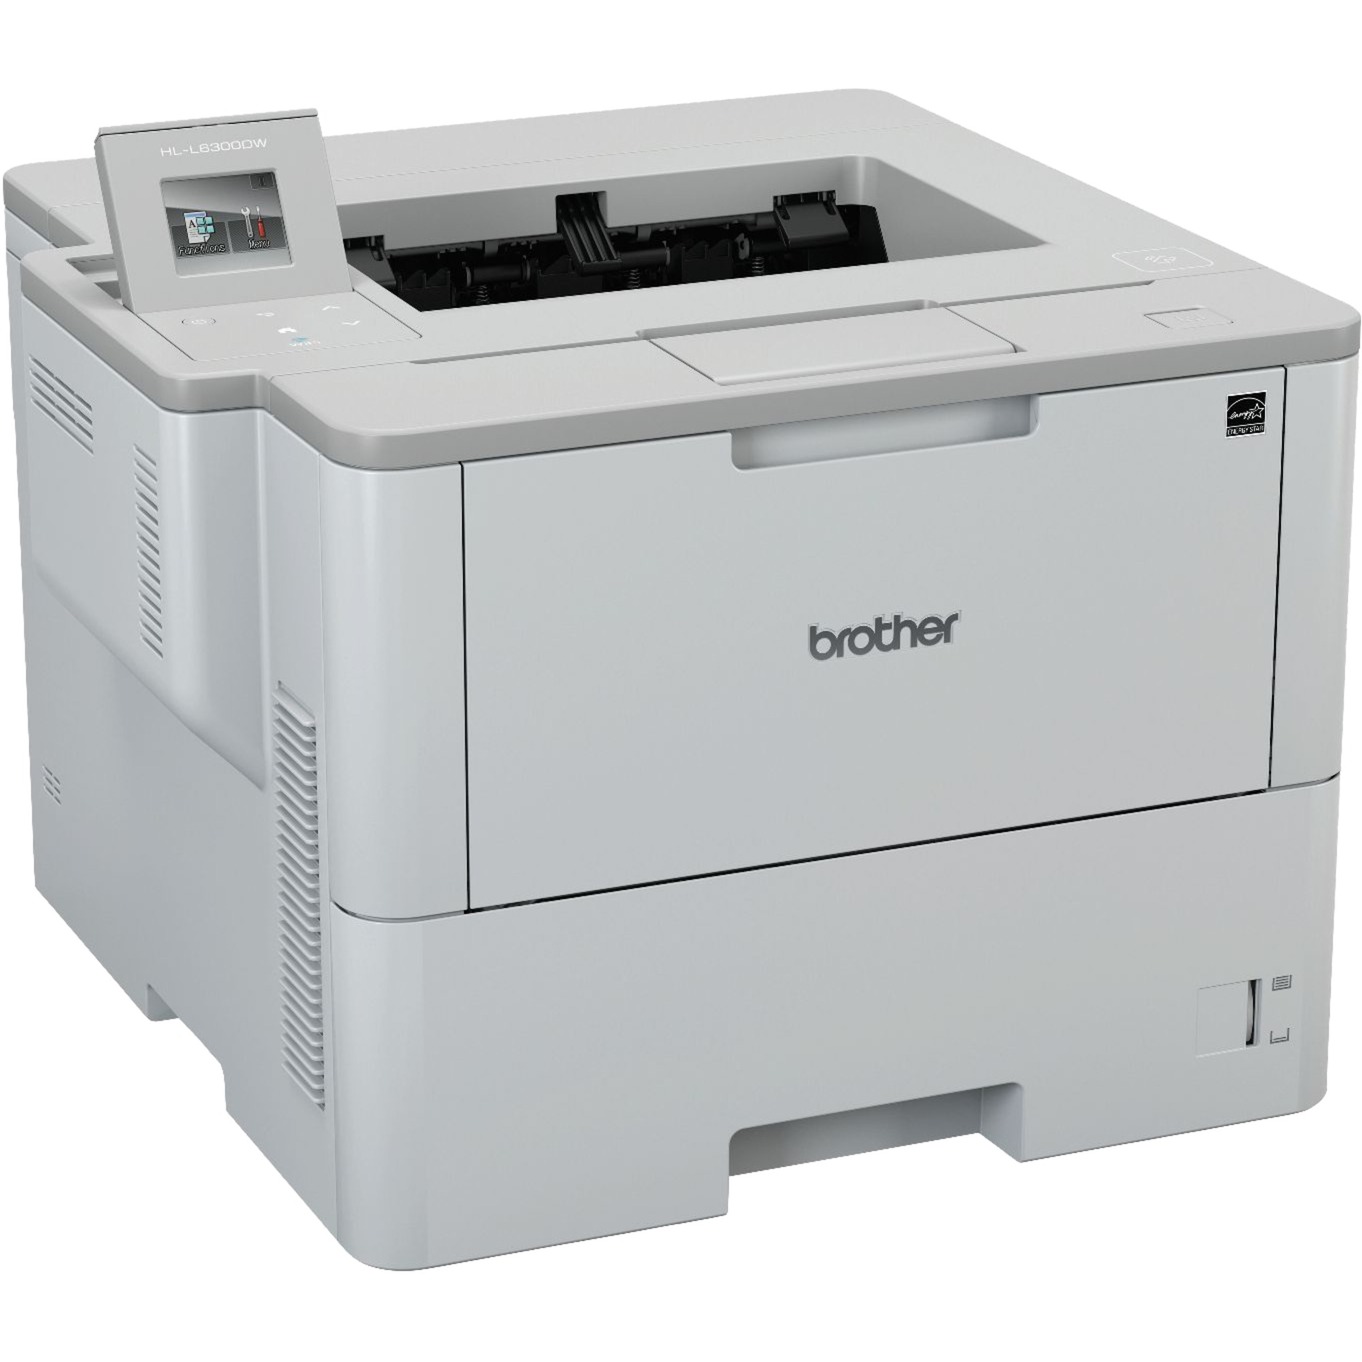 HL-L6300DW, Laserdrucker von Brother